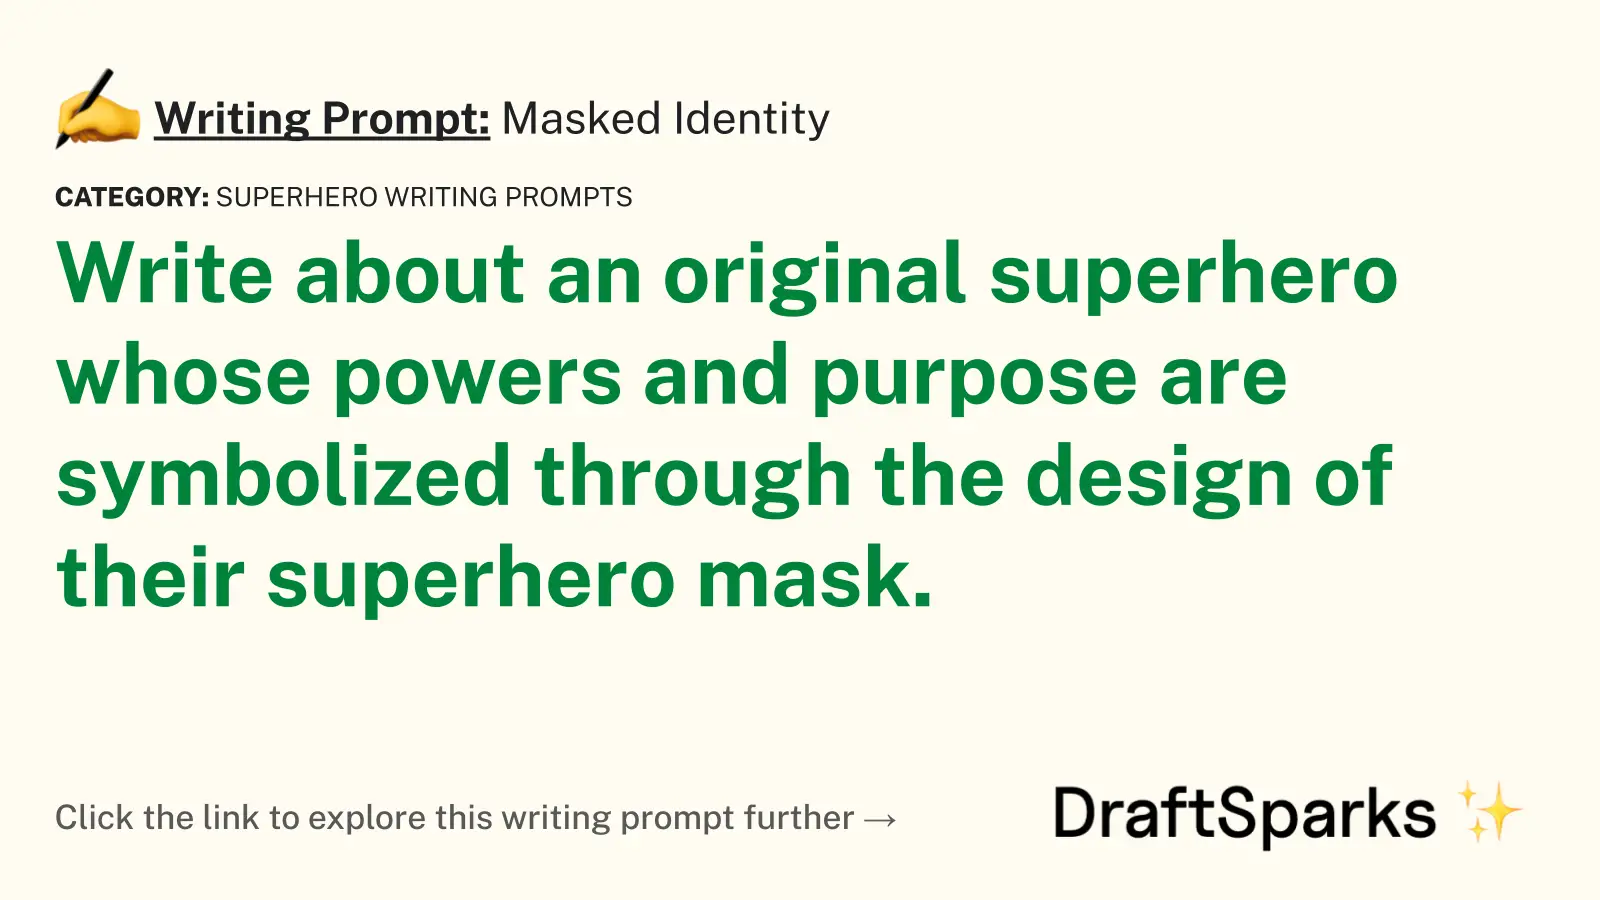 Masked Identity